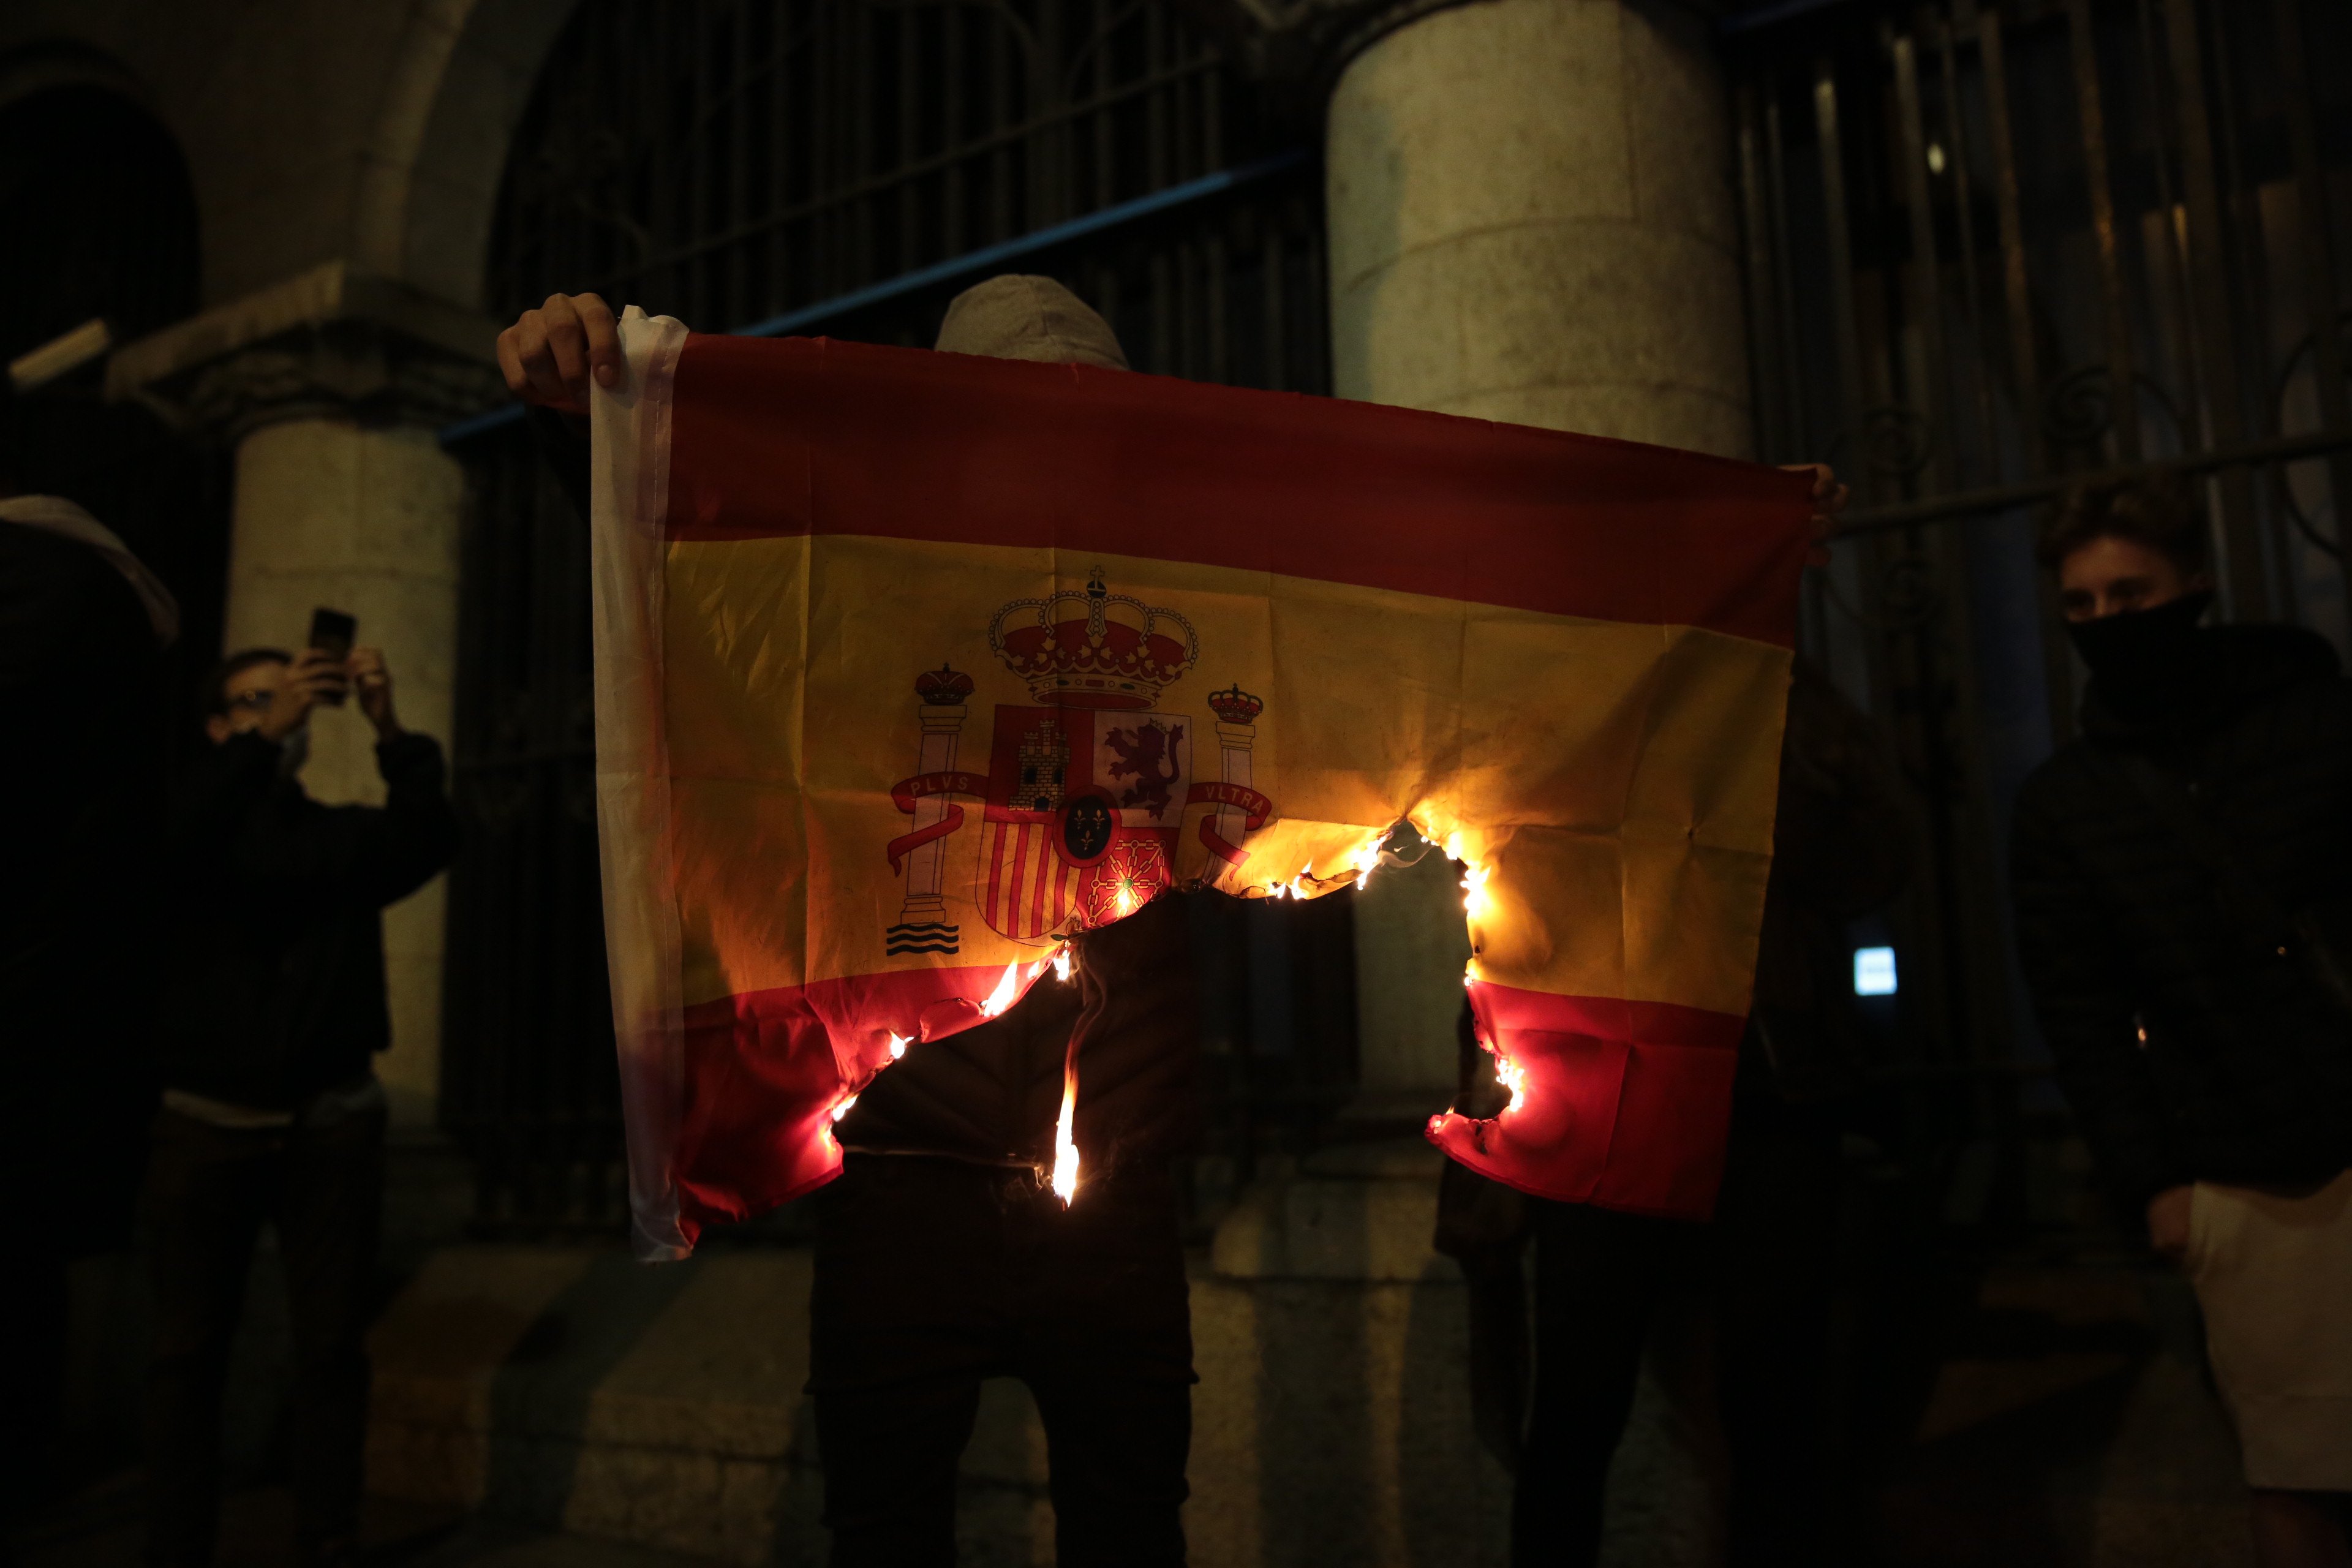 Espanya debat si fer cas d'Europa i no multar els qui cremin la bandera